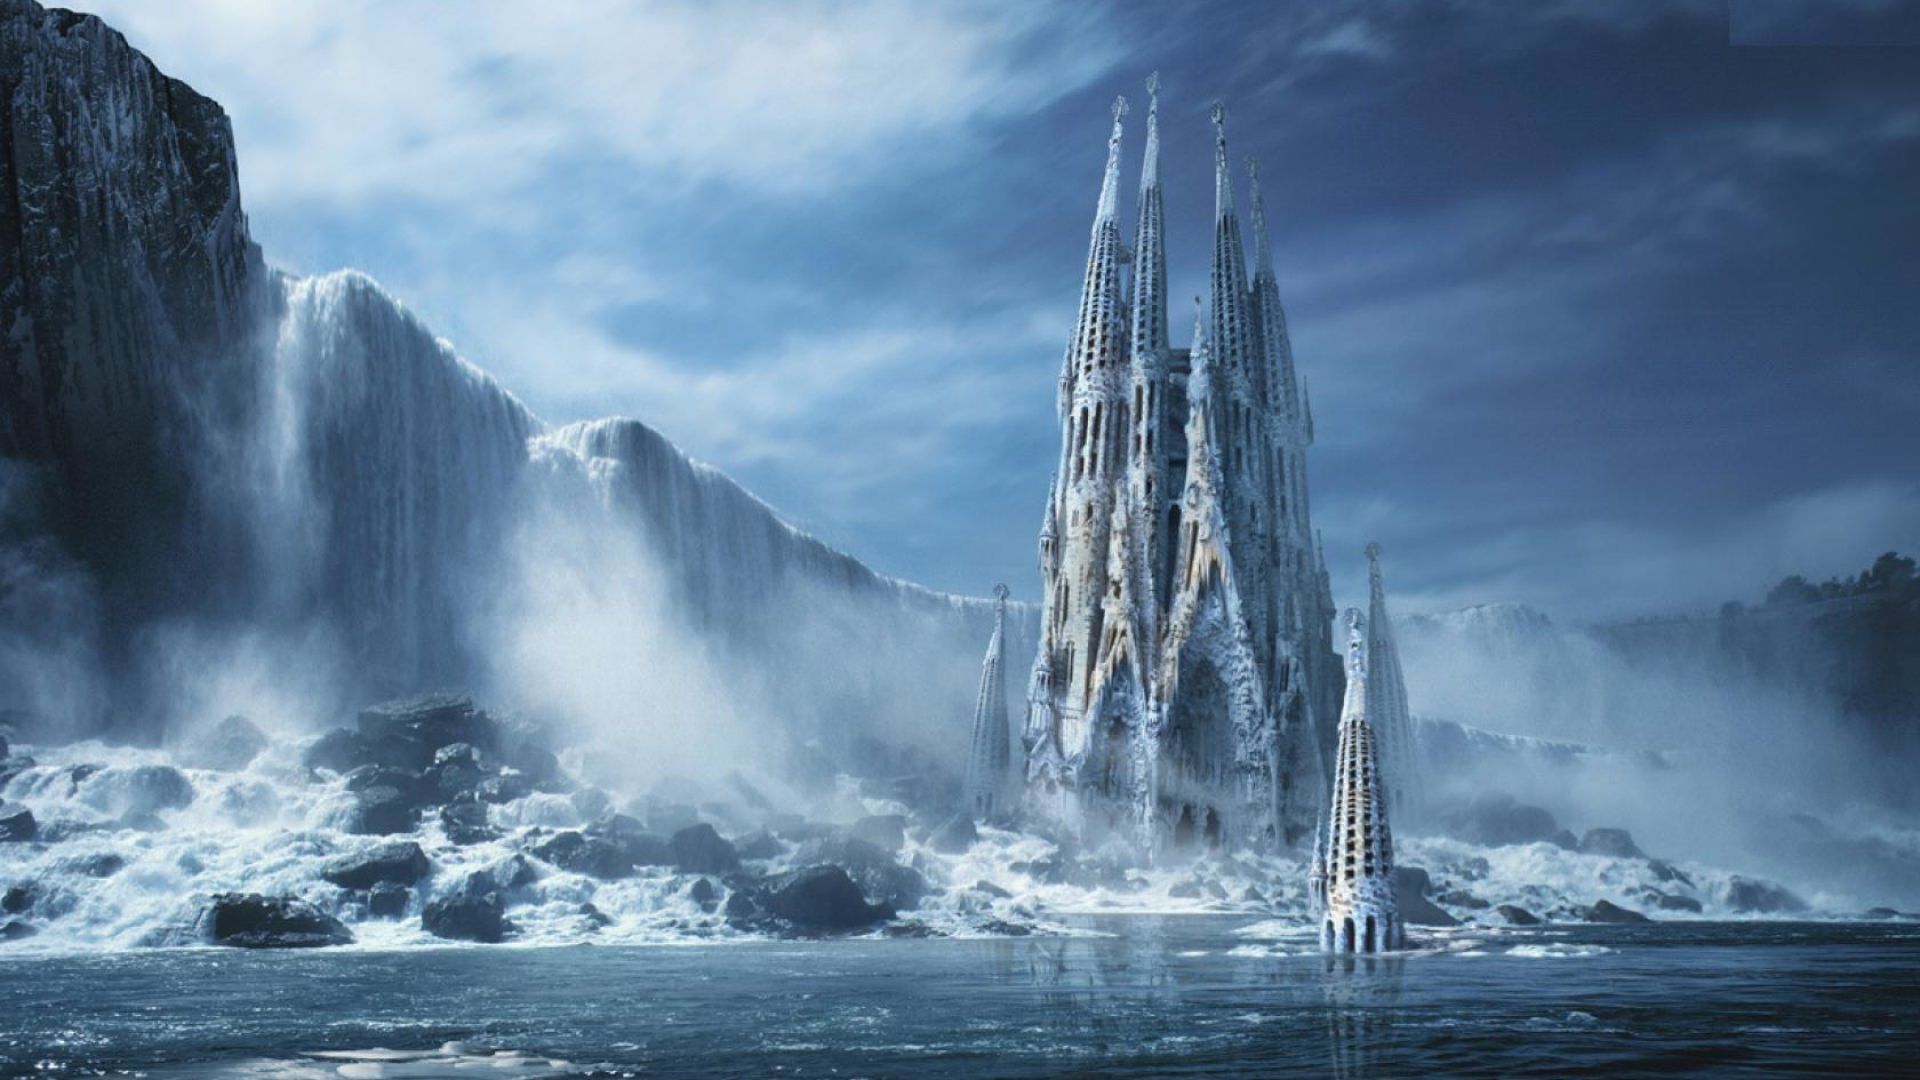 Frozen Castle Backgrounds Scene HD wallpaper